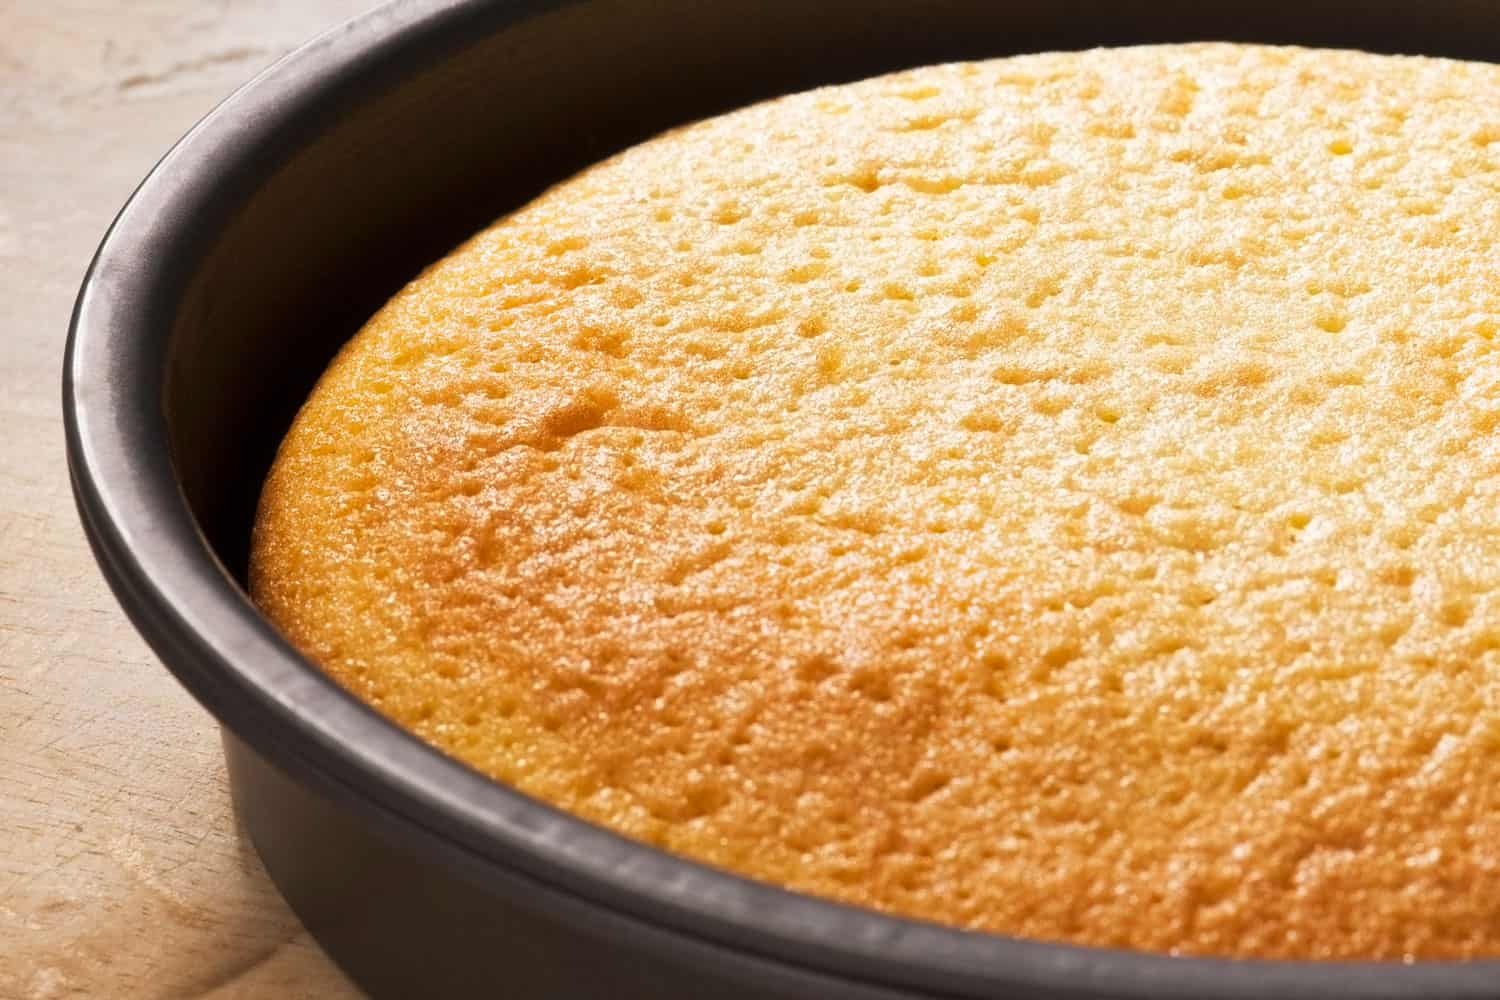 刚烤好的海绵蛋糕放在圆形烤盘里